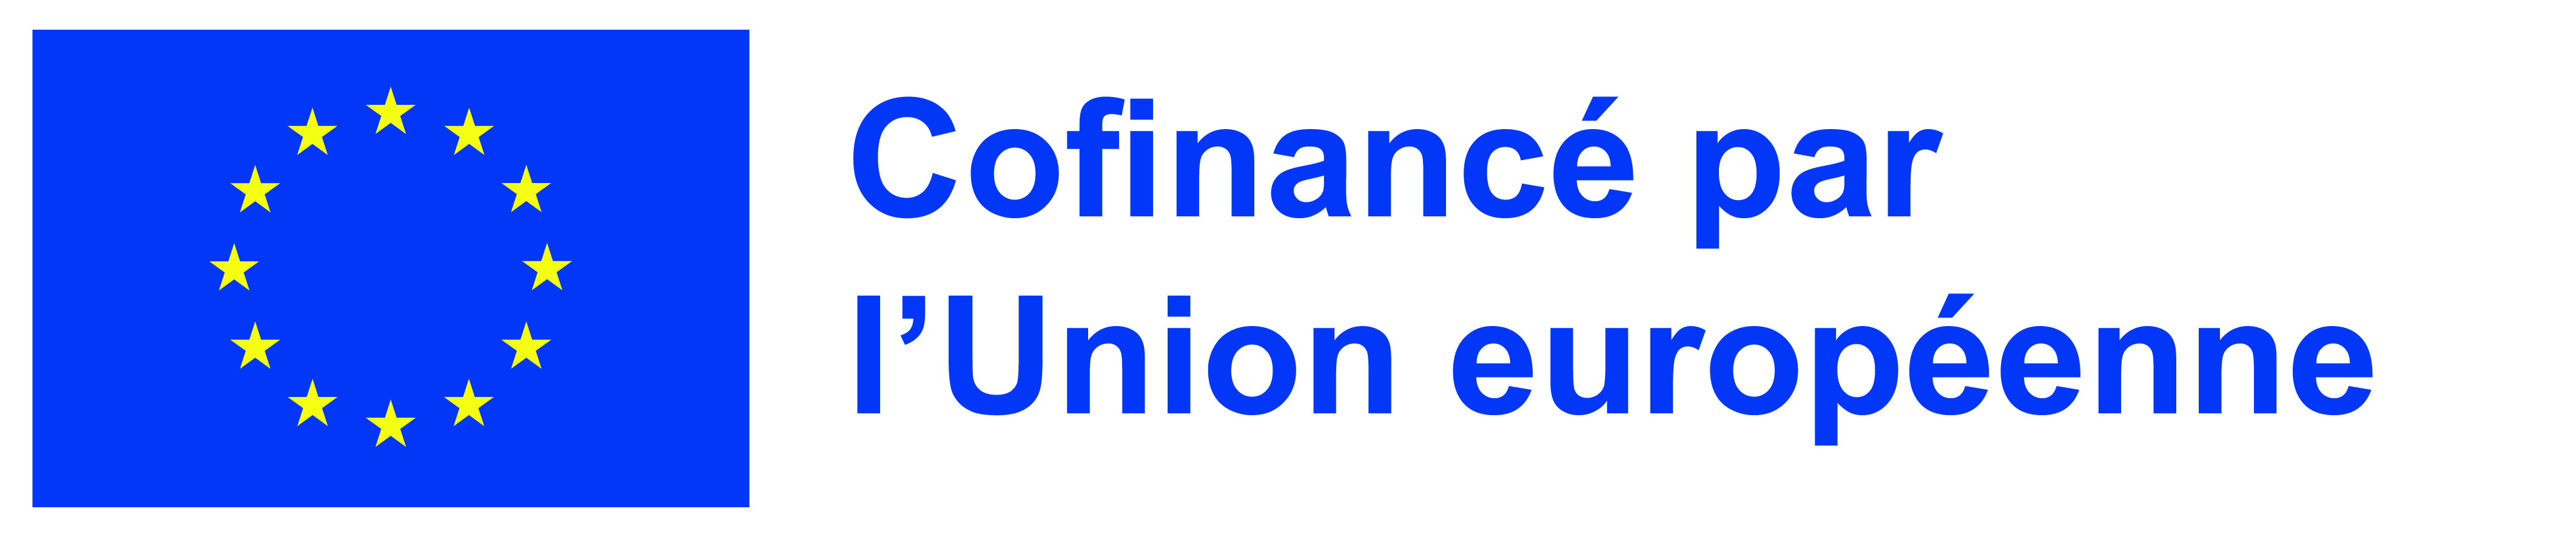 Logo Cofinancé par l'union européenne | École supérieure d'art et de design TALM